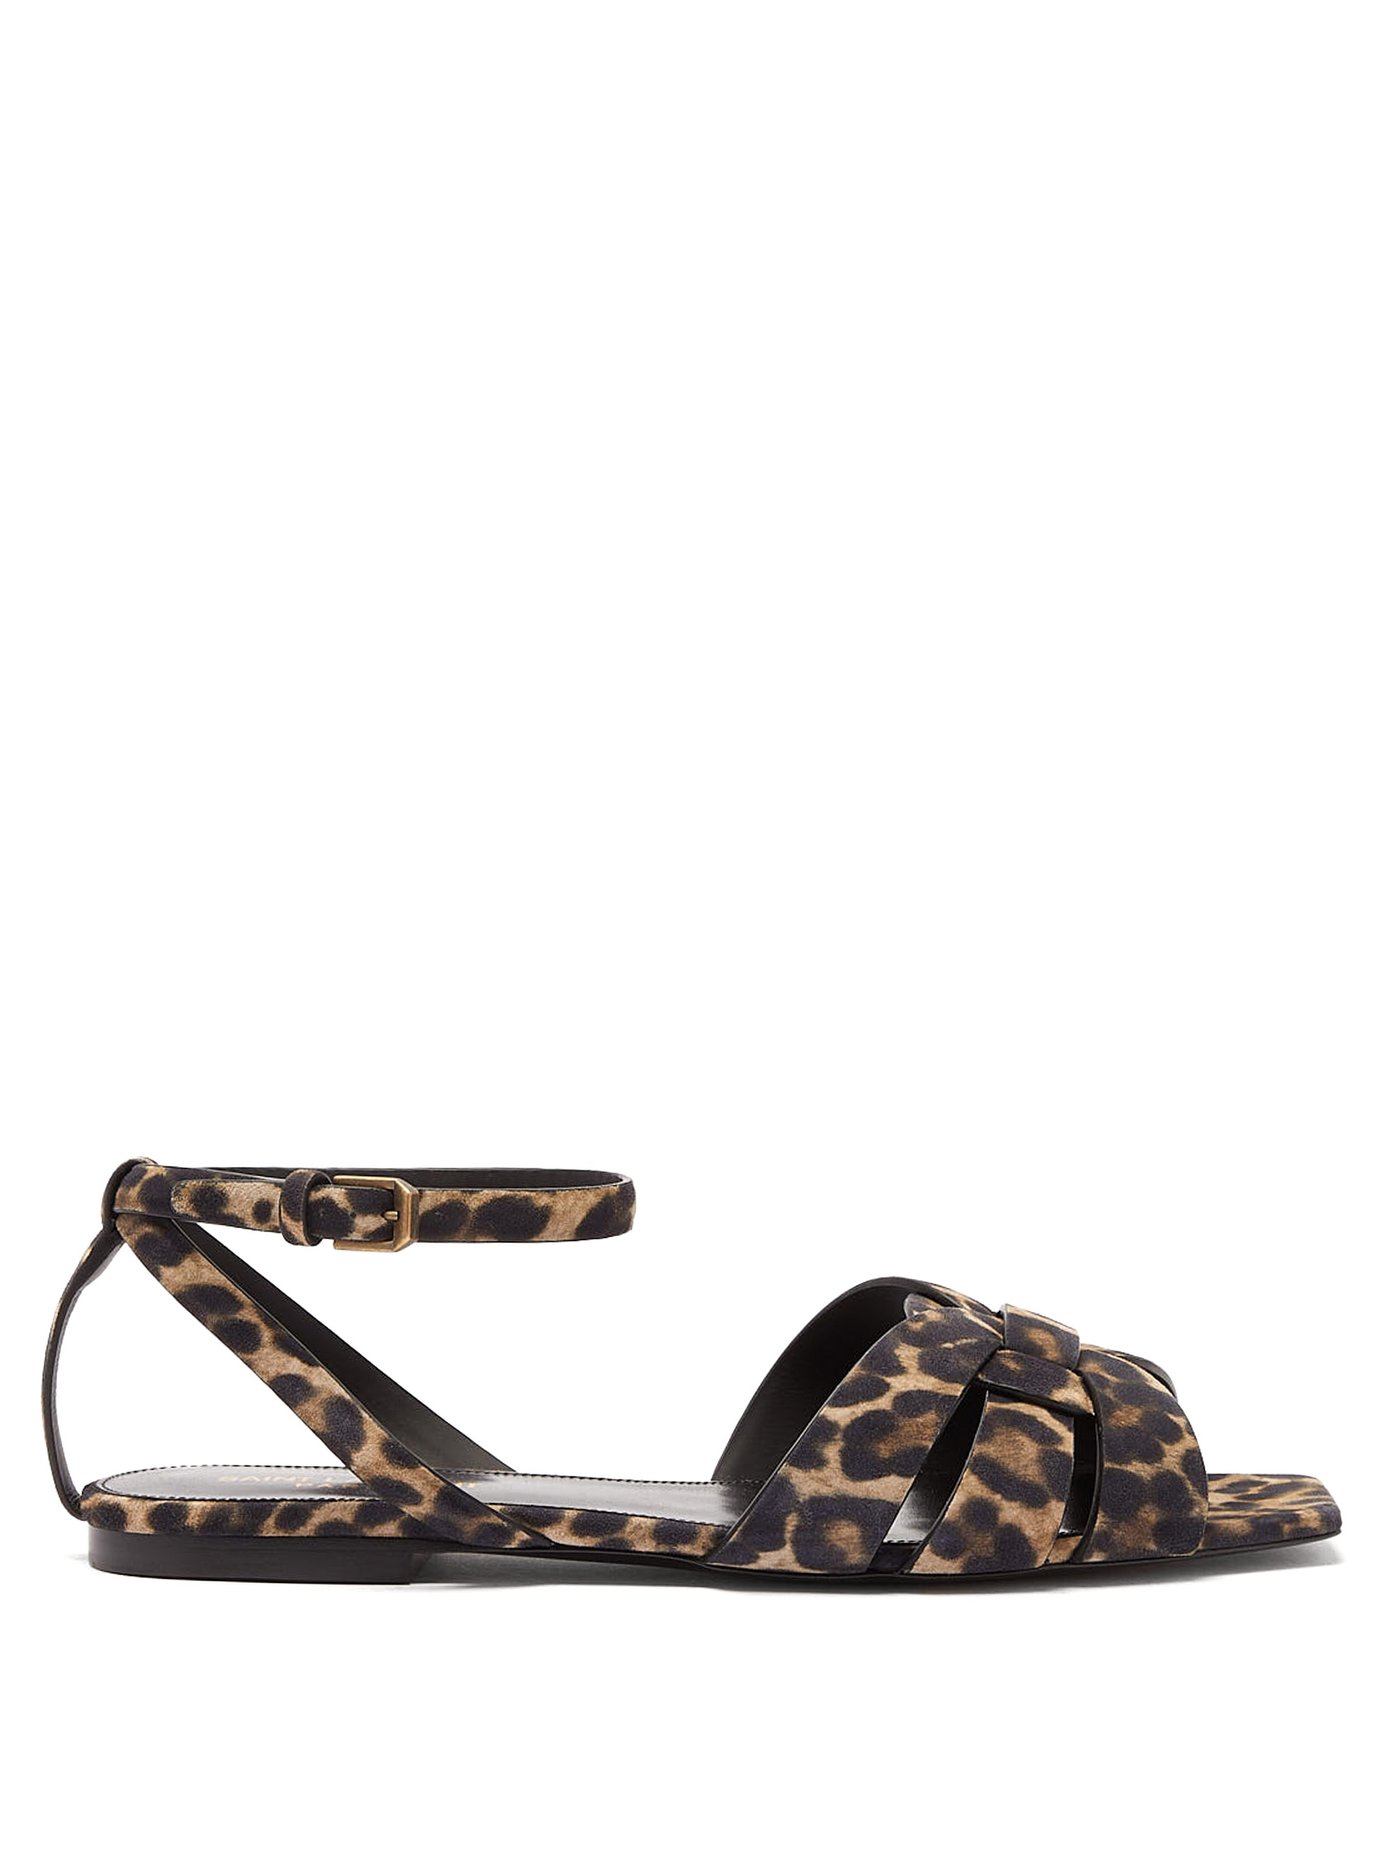 saint laurent leopard sandals